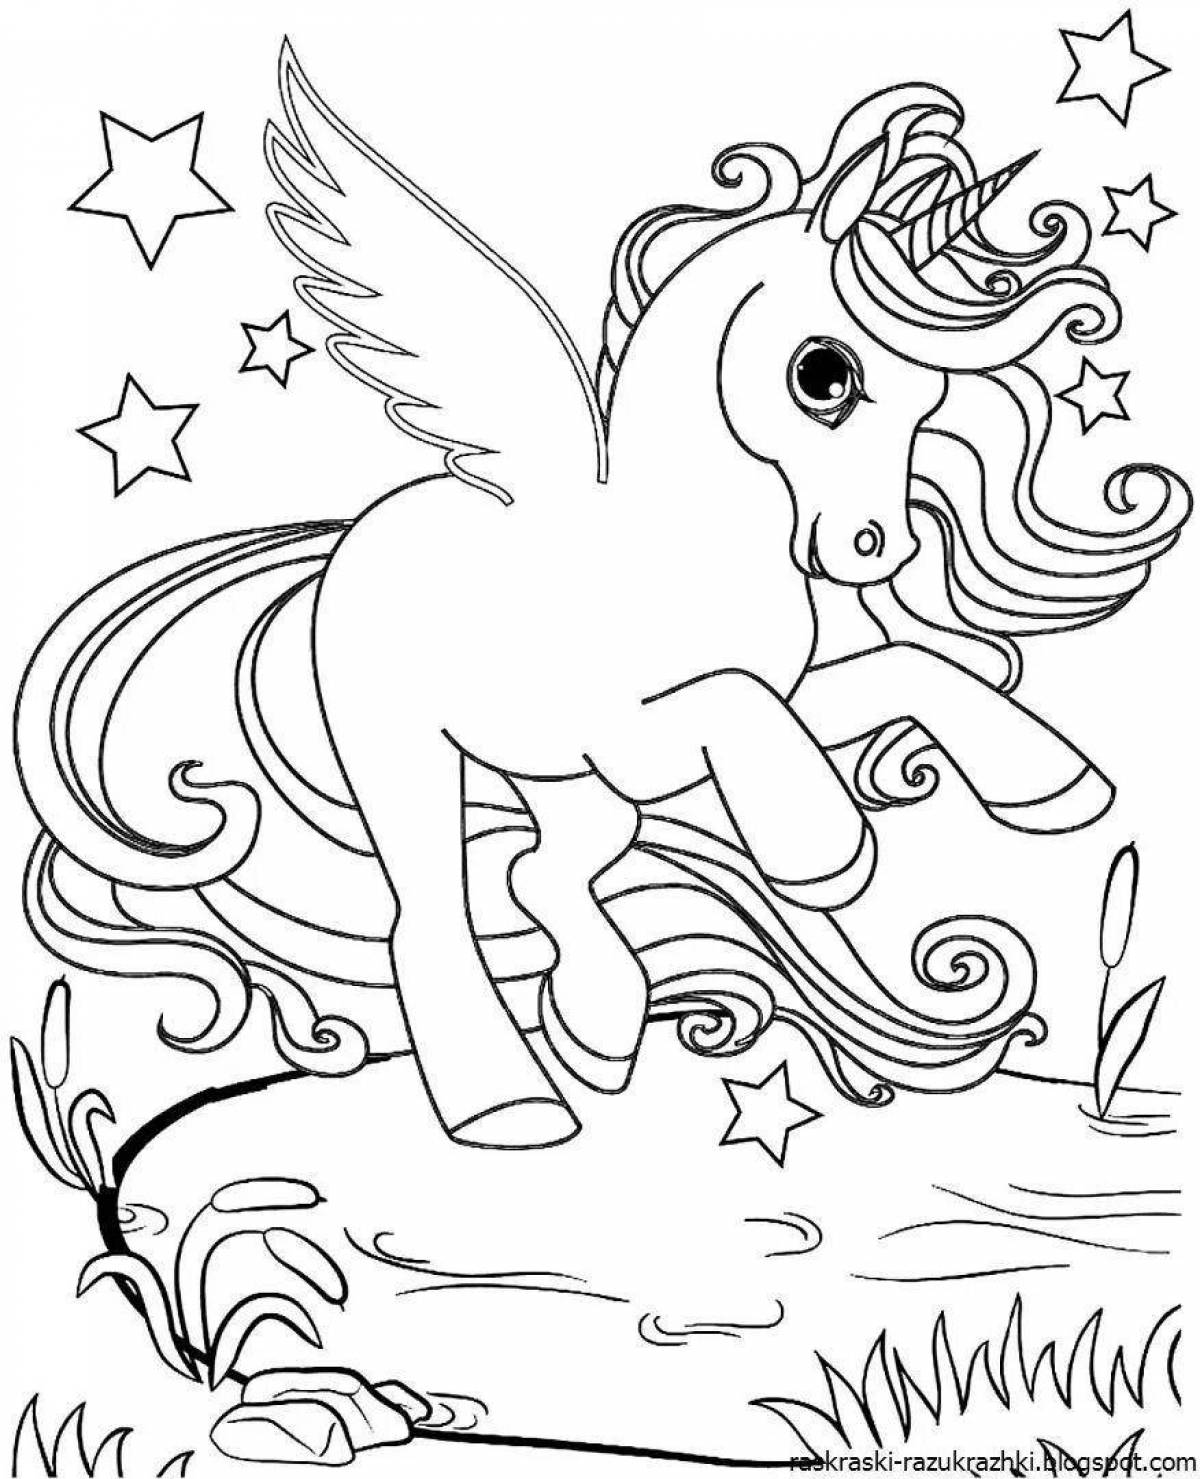 Fun coloring unicorn for girls 5 years old